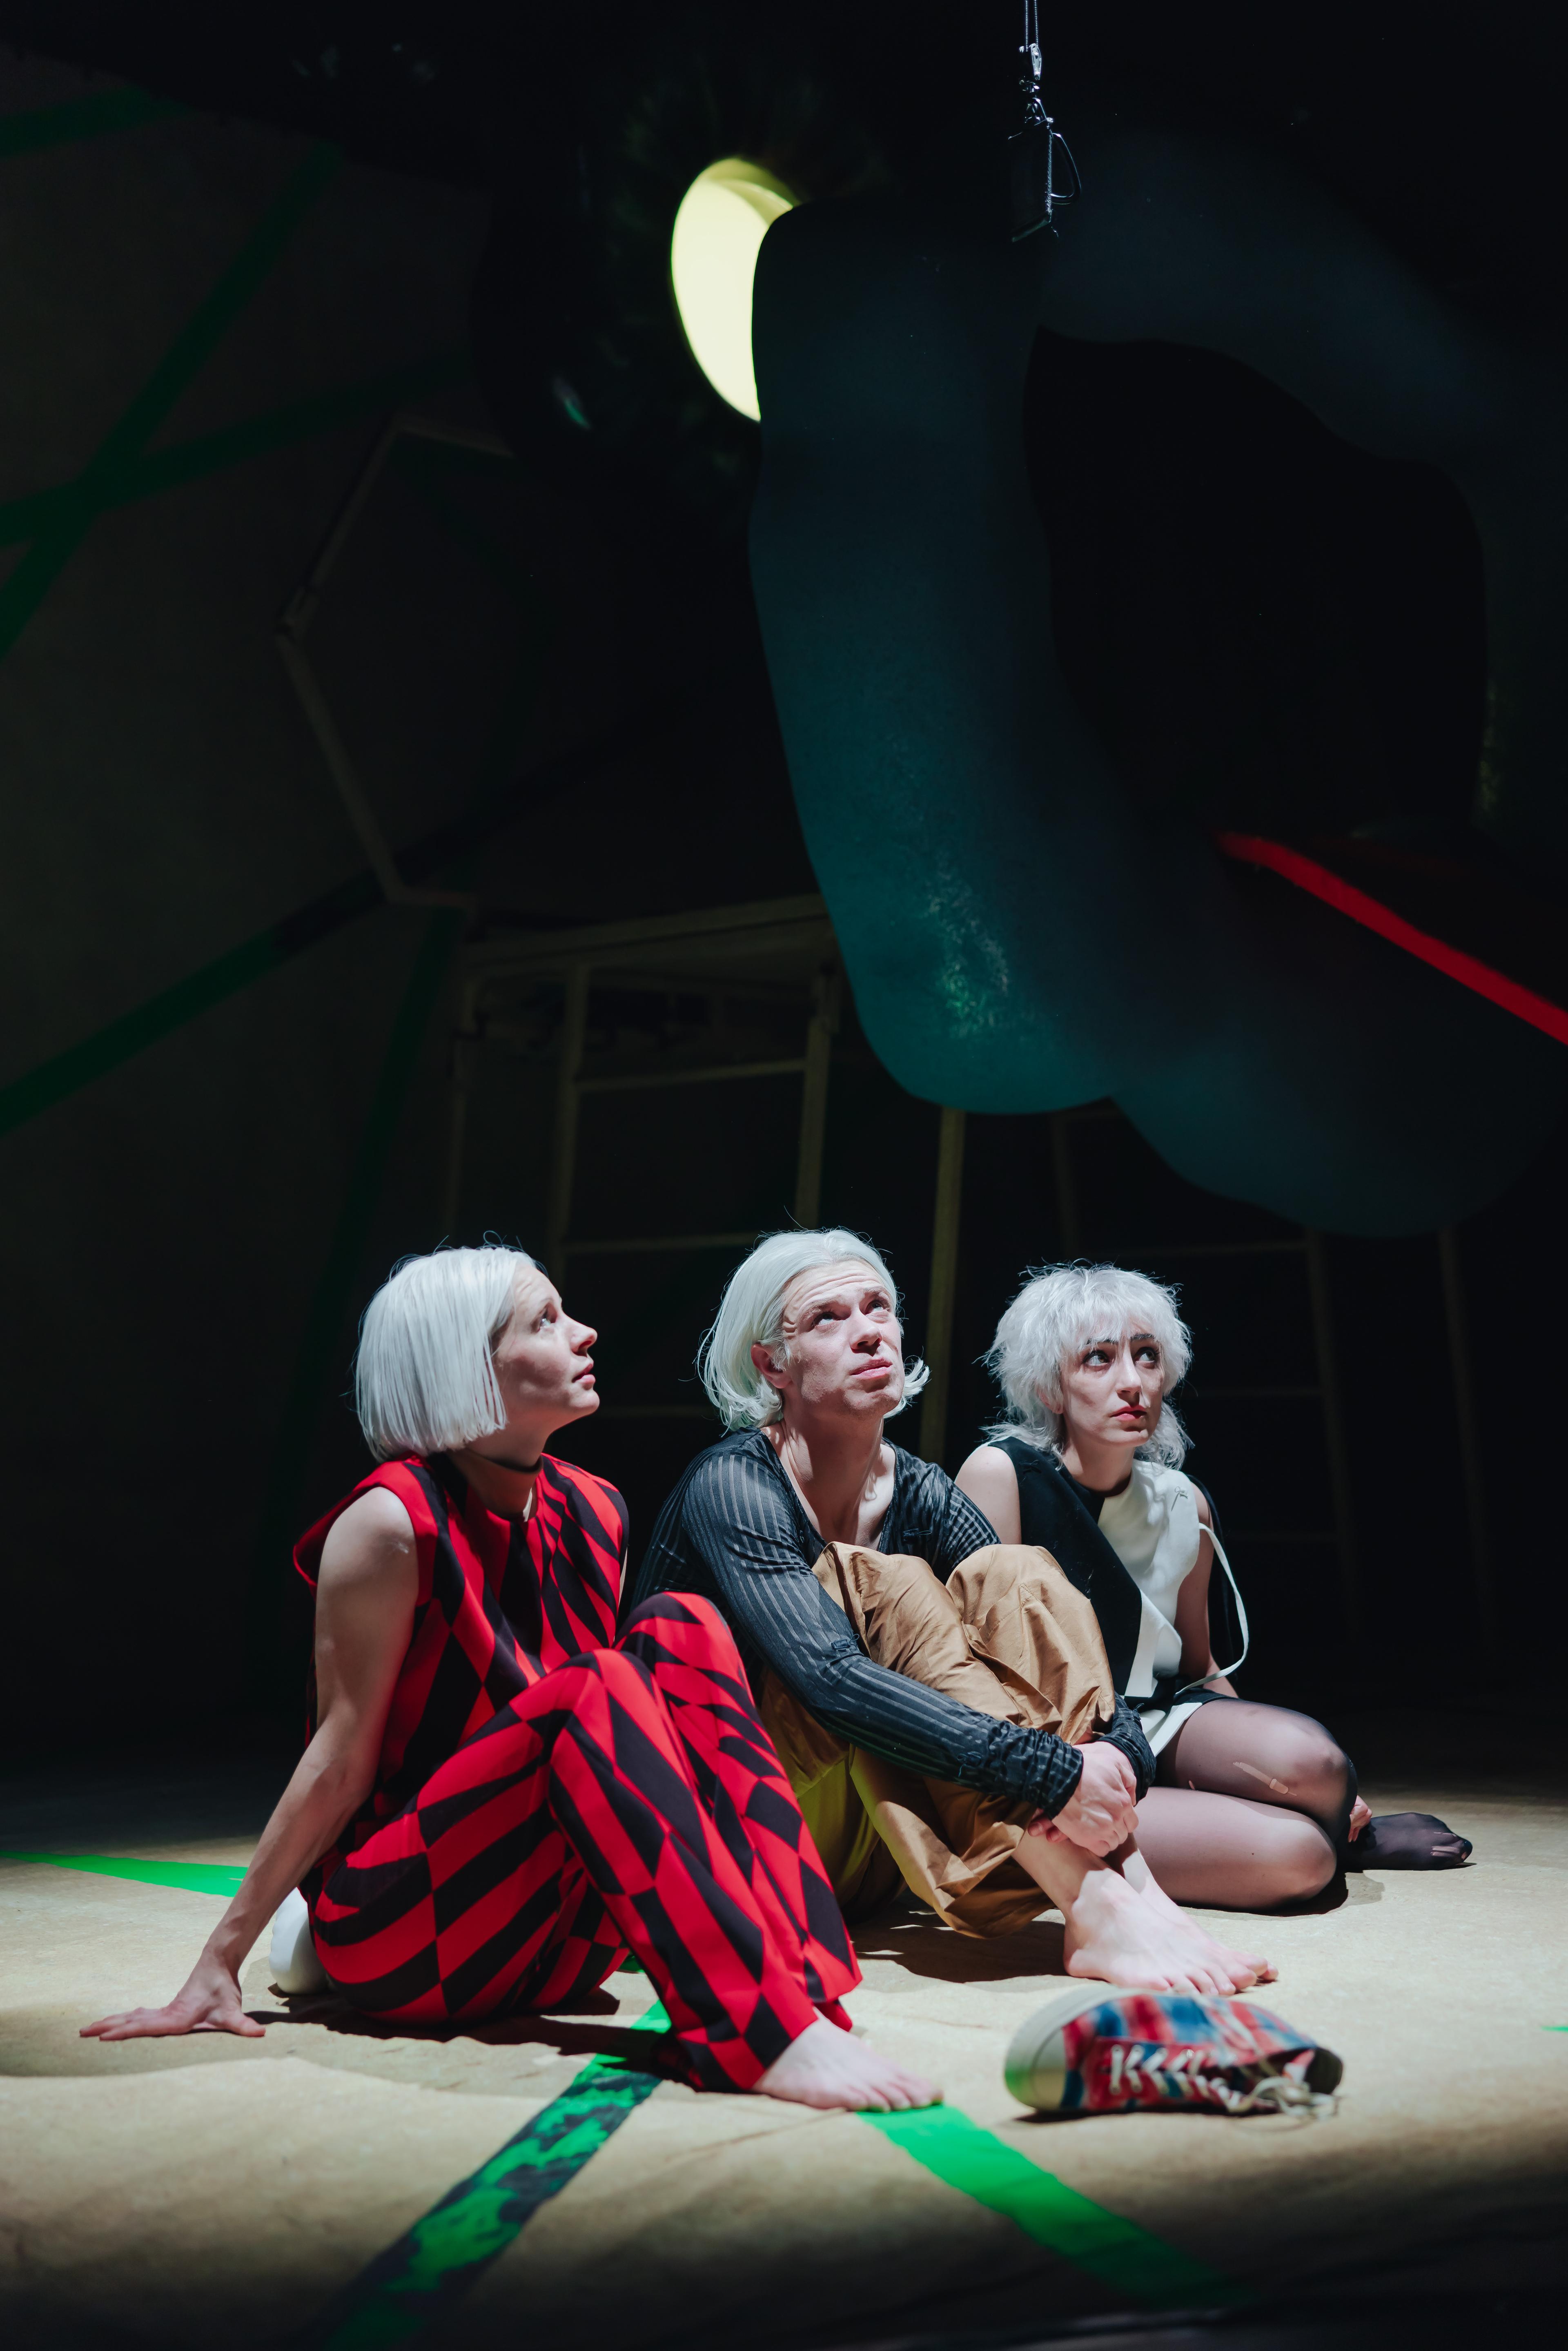 Imke Siebert, Jacob Z. Eckstein, Roxana Safarabadi in der Uraufführung von „Wir wissen, wir könnten, und fallen synchron“ am Theater Bonn. Foto Markus Bachmann